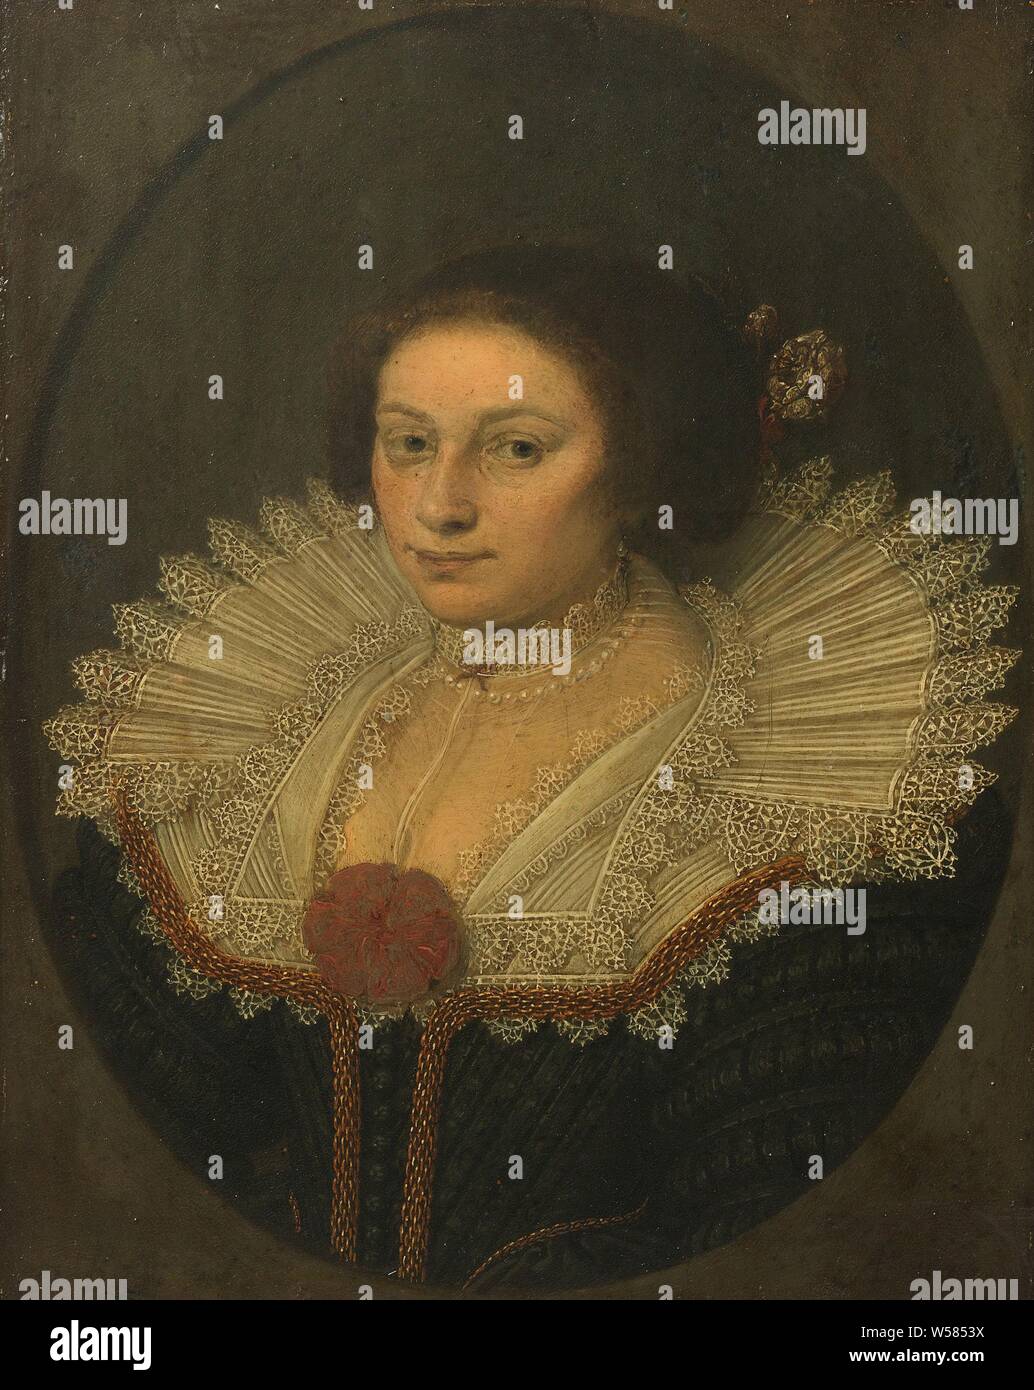 Ritratto di Aertje Witsen (1599-1652), il Ritratto di Aertje Witsen, moglie di Cornelis Bicker. Busto con un ampio collare in pizzo., David Bailly, 1626, rame (metallo), pittura a olio (vernice), supporto: h 18.5 cm × W 14,8 cm d 4,3 cm Foto Stock